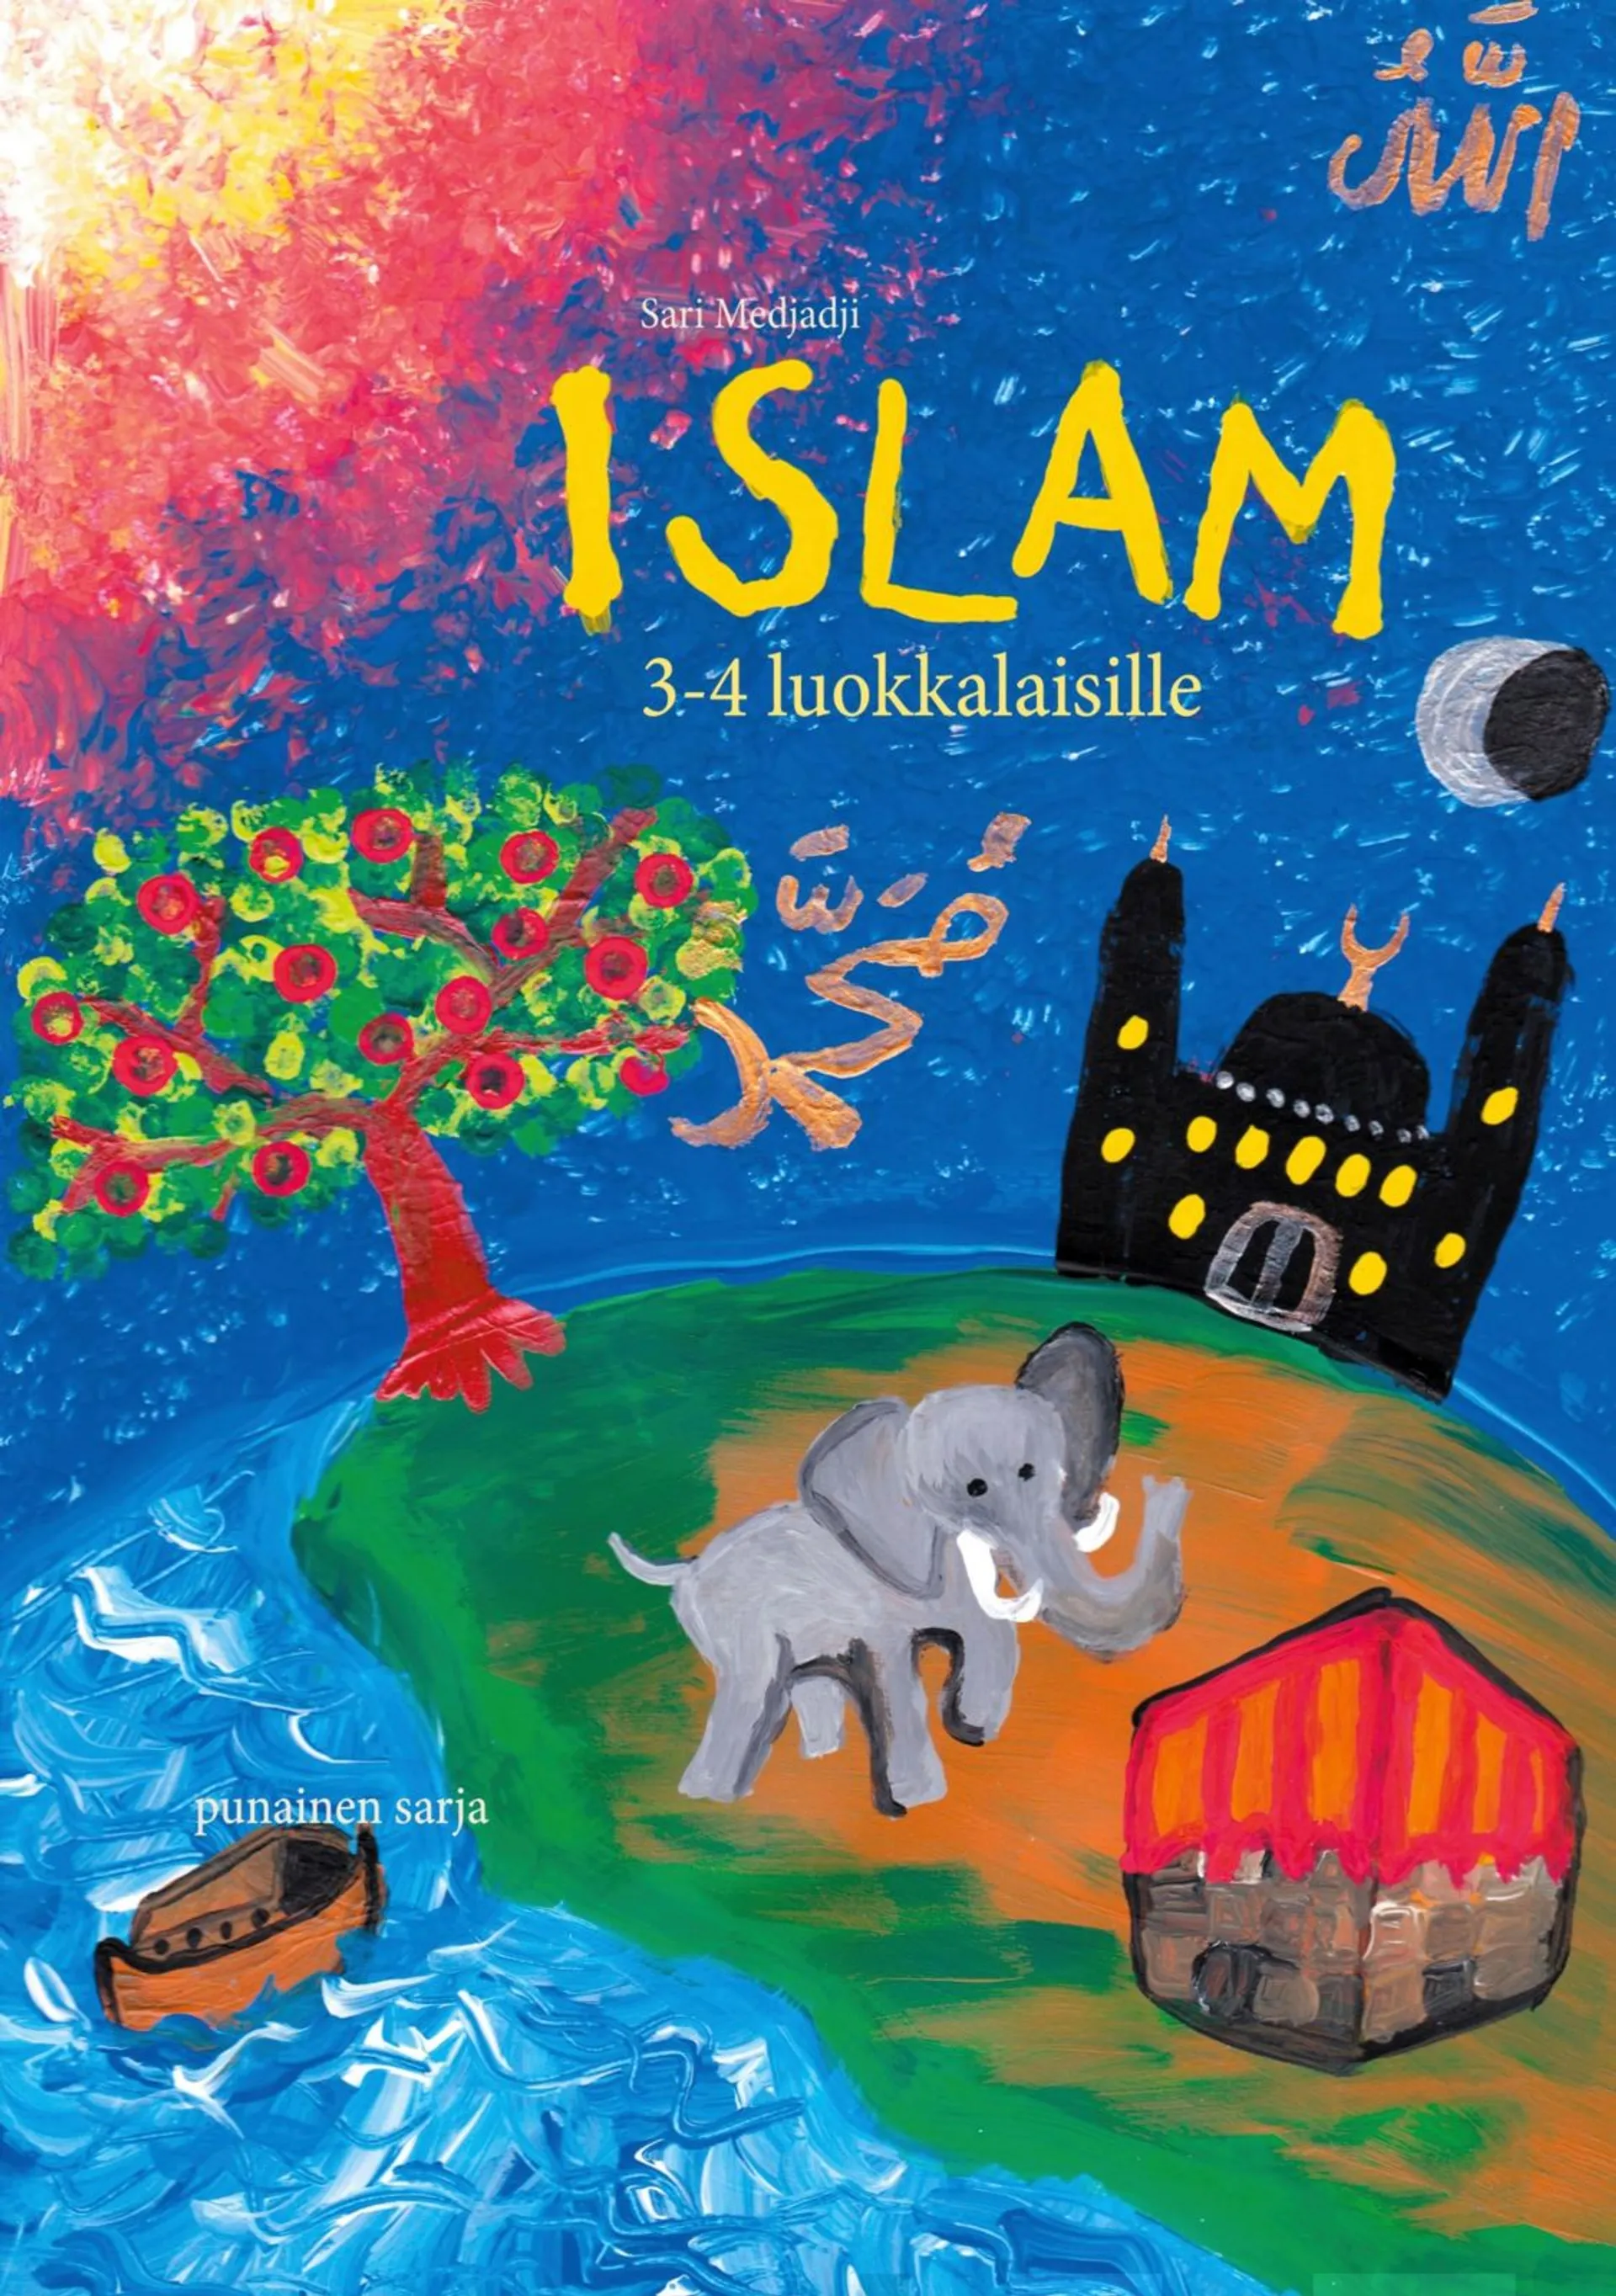 Medjadji, Islam 3-4 luokkalaisille - Punainen sarja